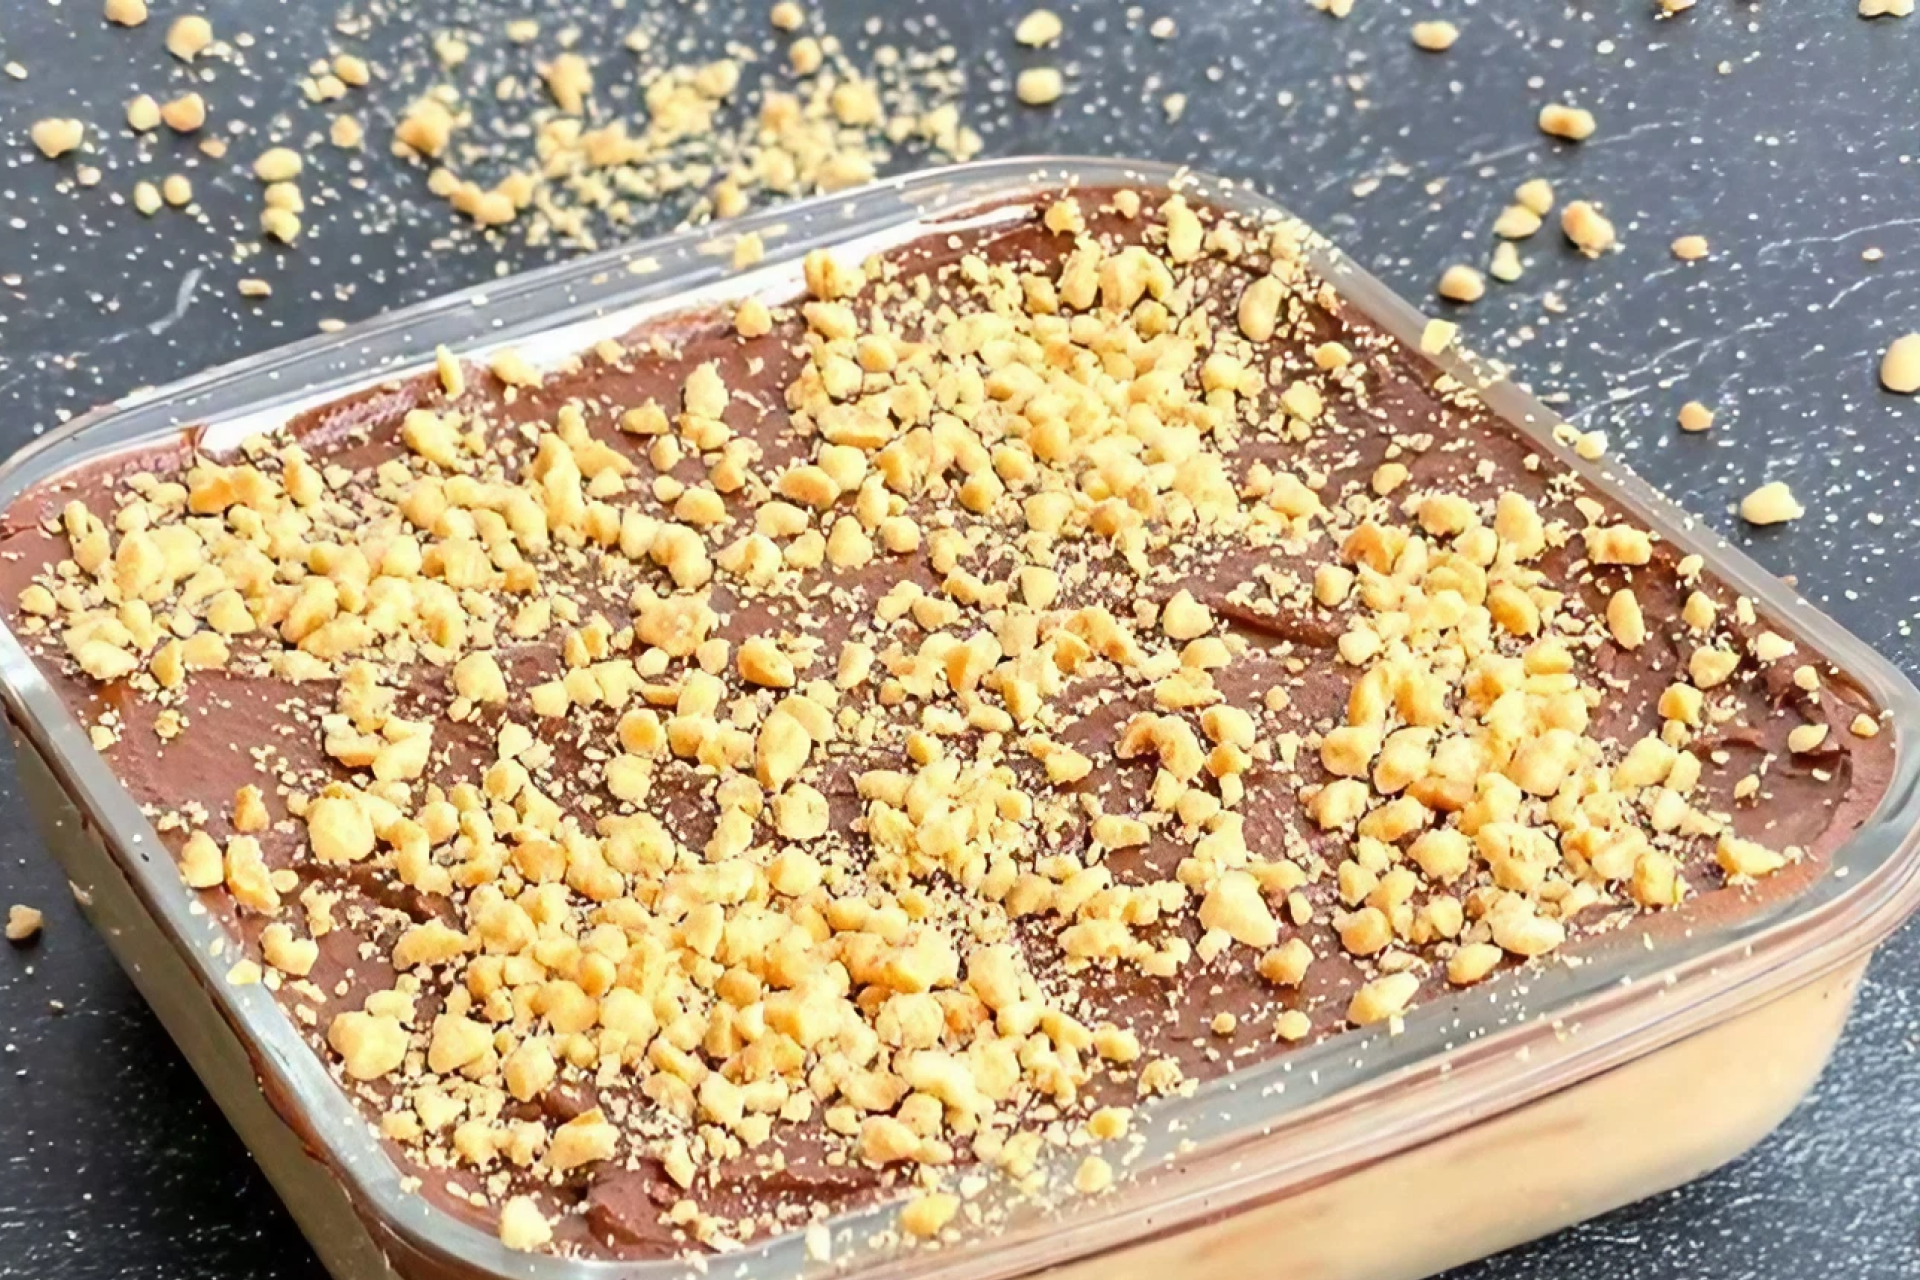 Pave de amendoim servido em travessa de vidro, com ganache de chocolate e amendoim triturado por cima